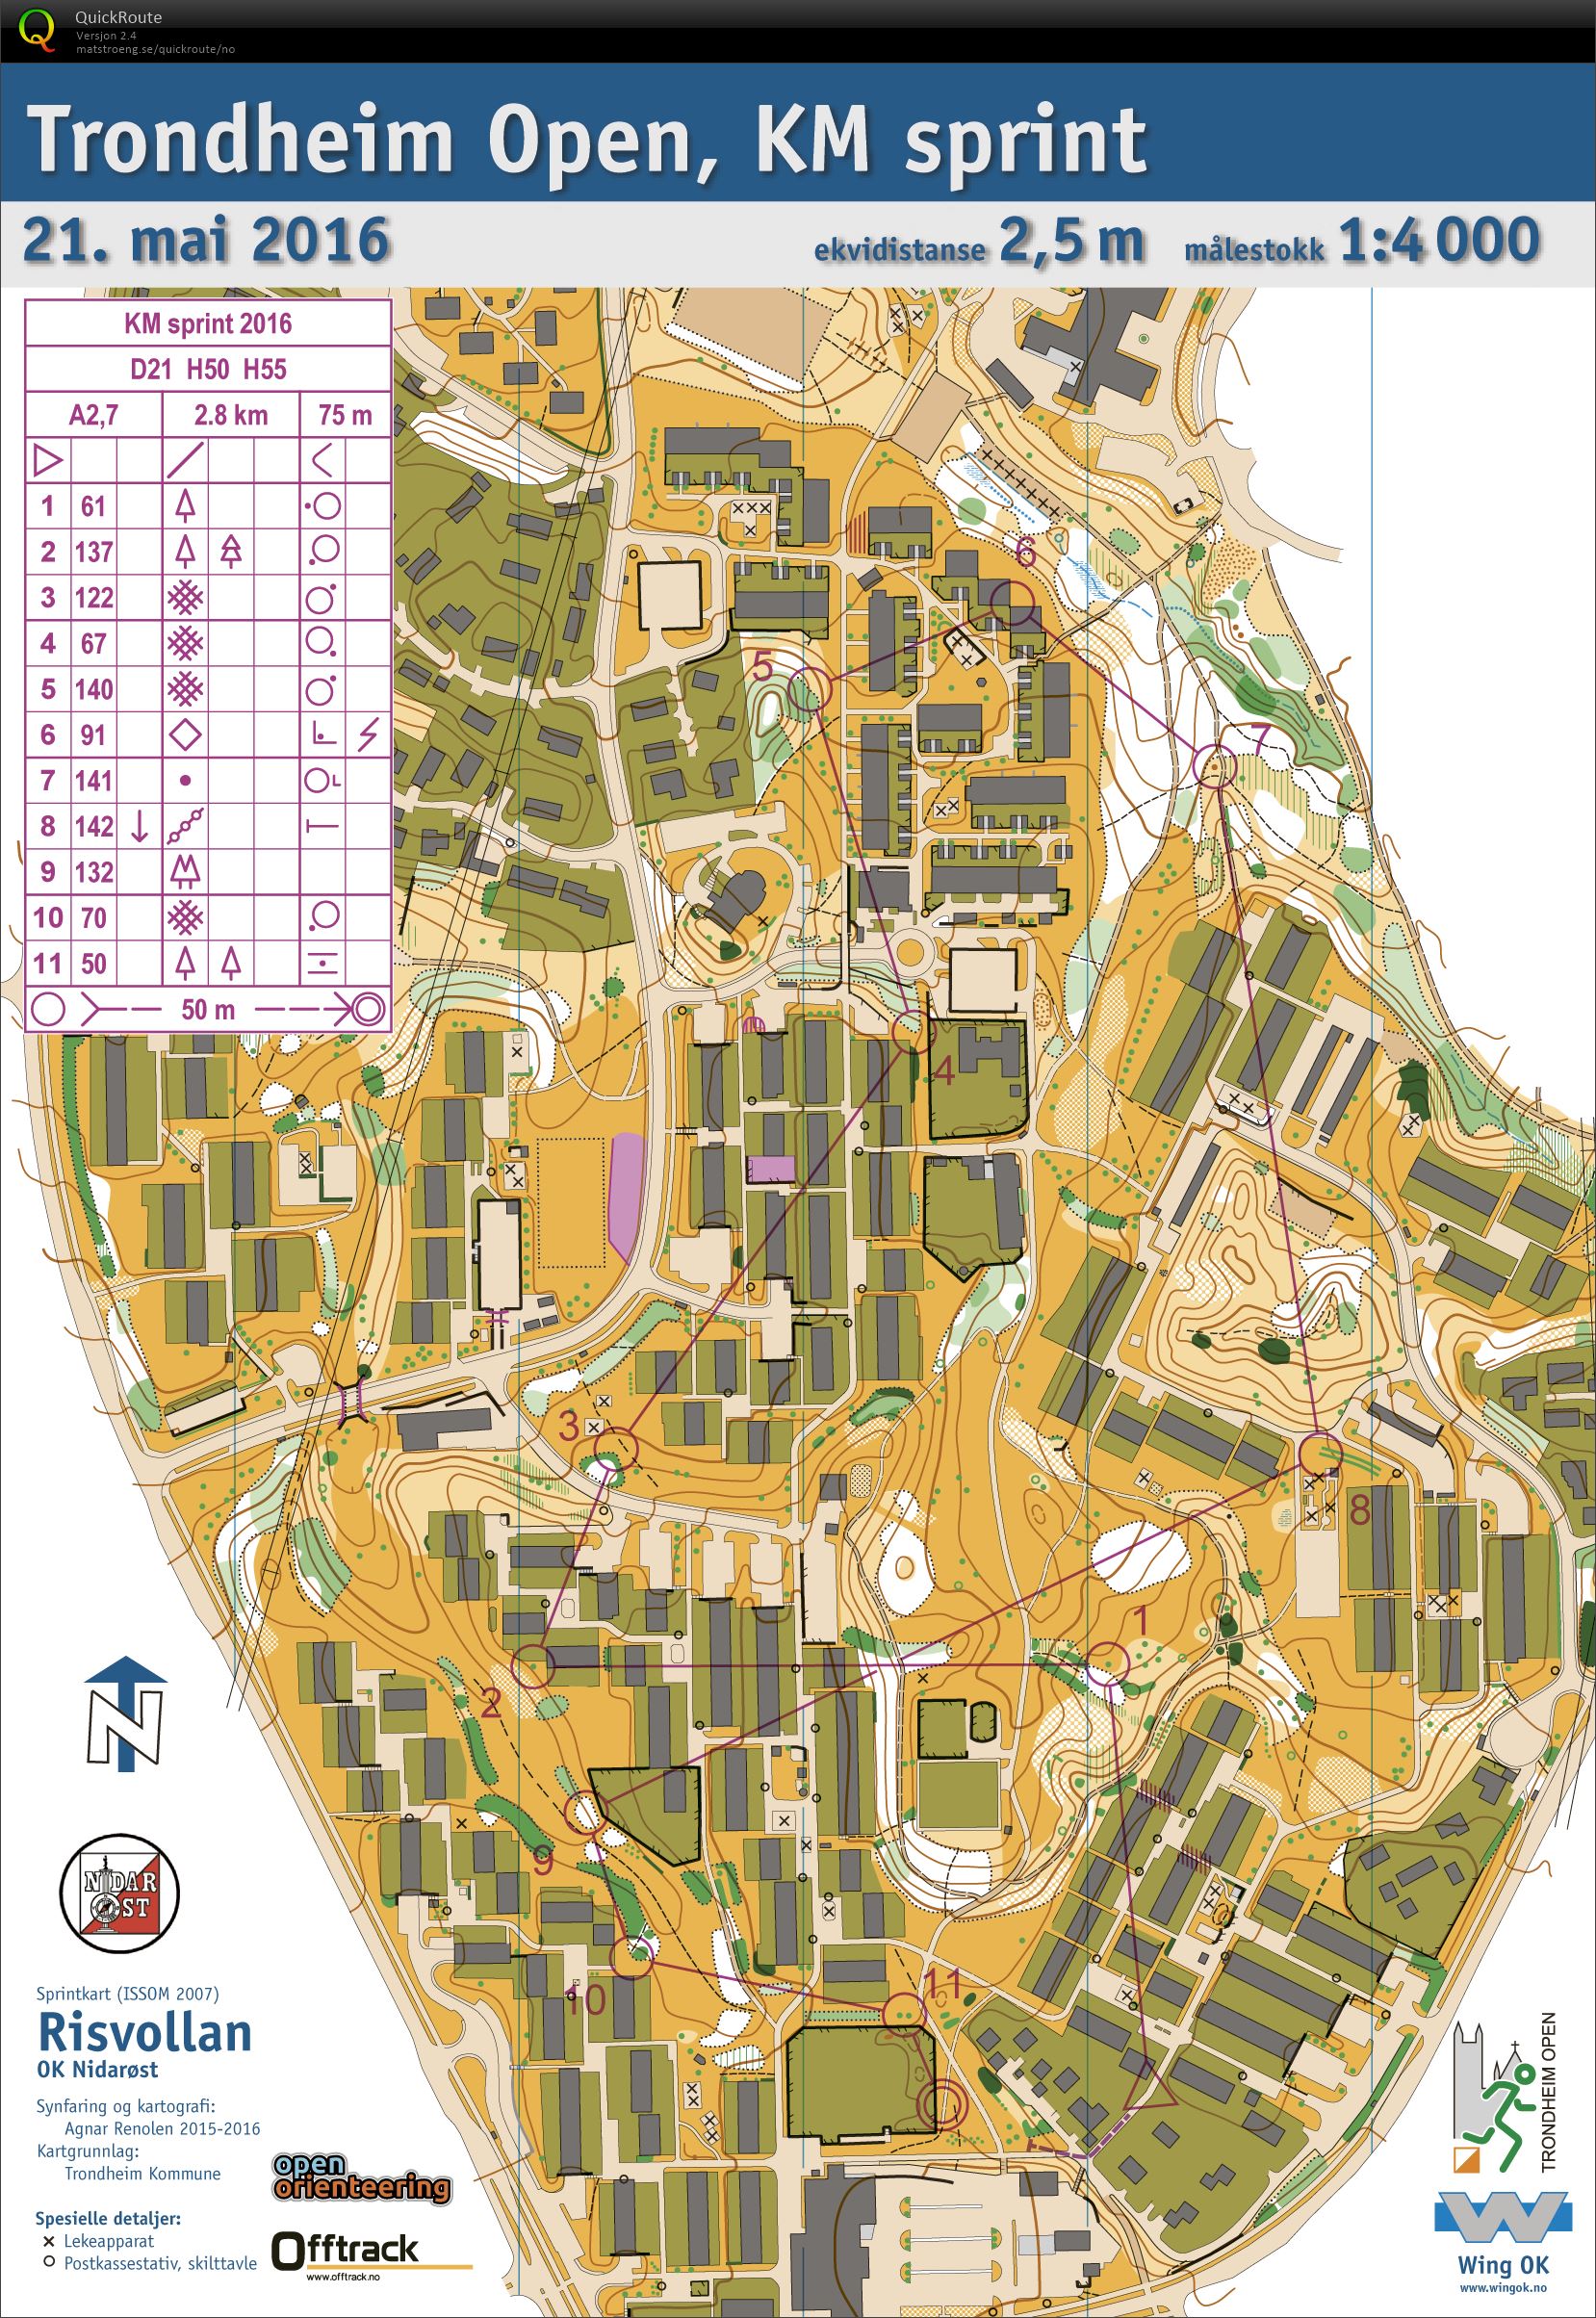 Trondheim Open, KM sprint (21-05-2016)